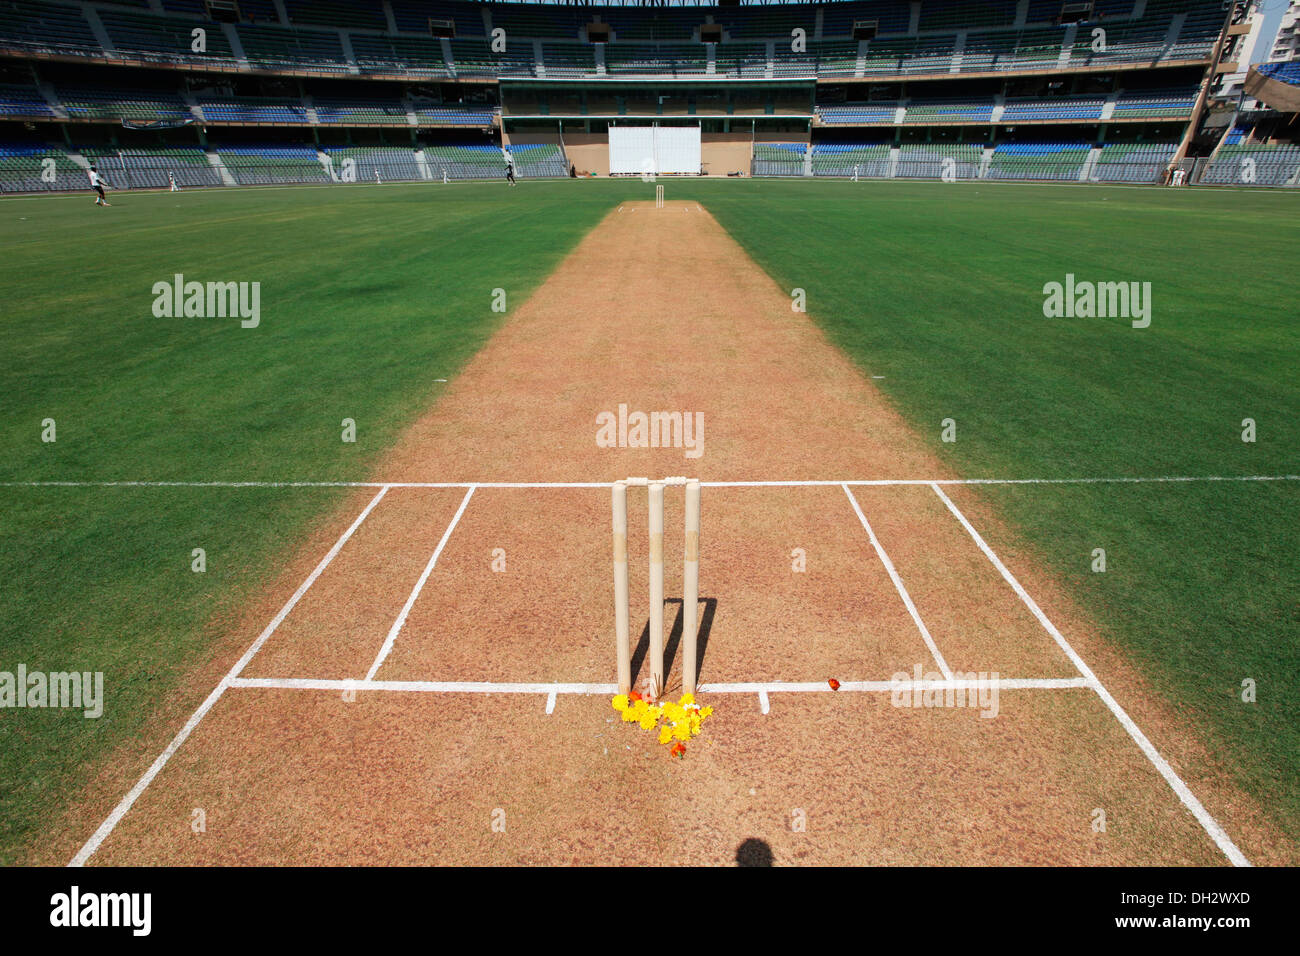 stumps and cricket pitch Wankhede Stadium Mumbai Maharashtra India Asia Stock Photo